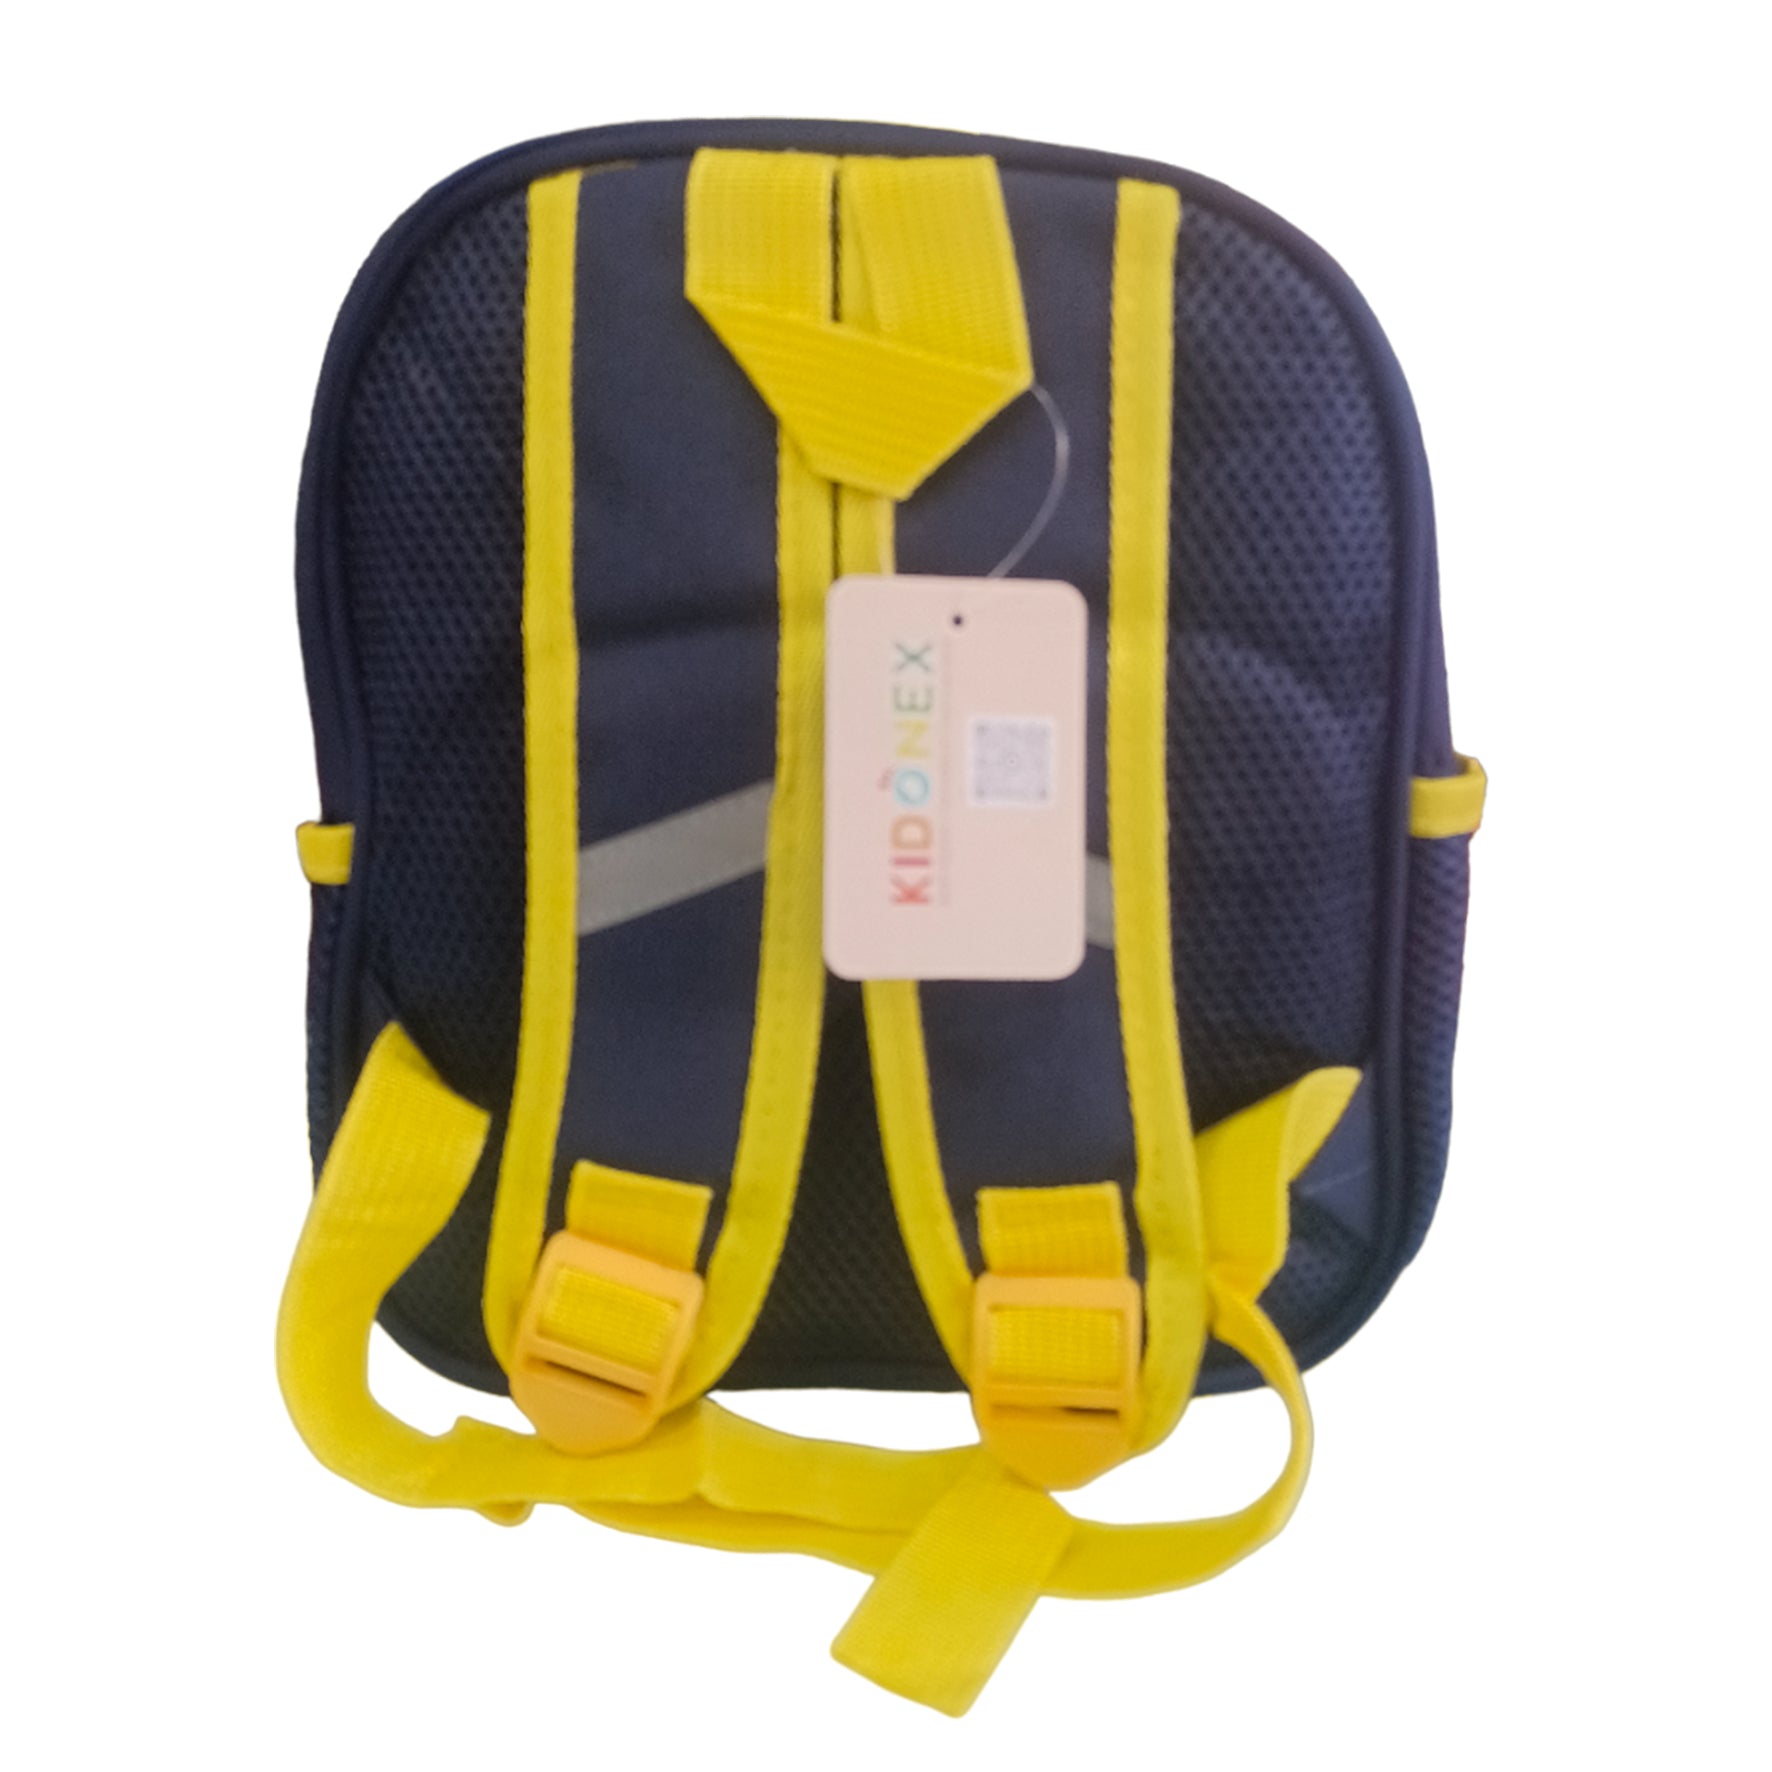 Pre-school Backpack Toddler Neoprene Animal Waterproof Schoolbag Lunch backpack for Kids Boys & Girls